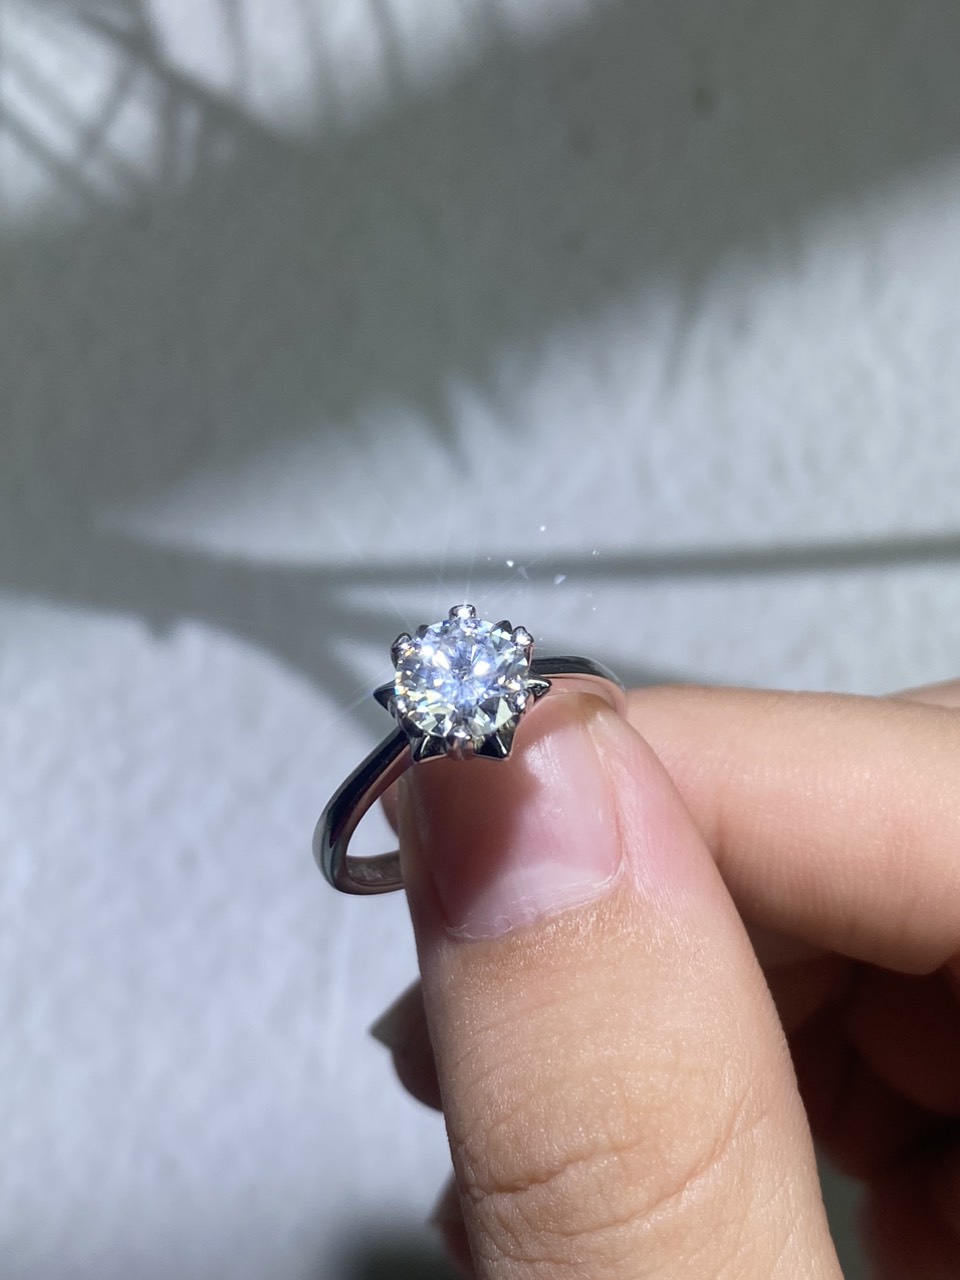 Phụ kiện đeo ngón tay Bạc 925 Kim cương nhân tao Moissanite 2.0carat 8.0mm